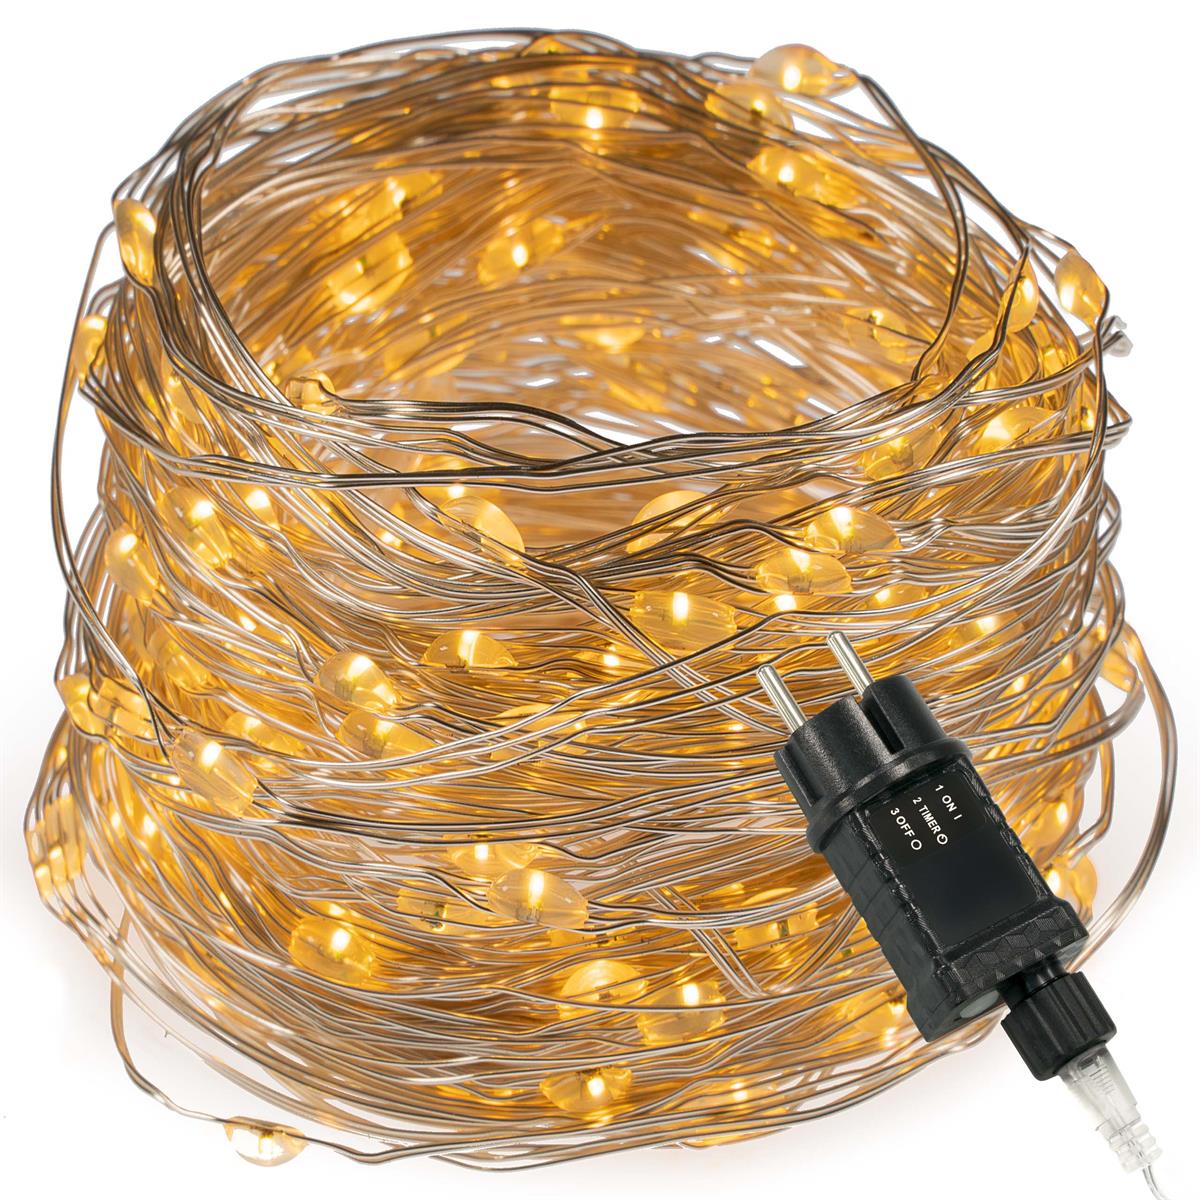 200 LED Lichterkette Silberdraht warmweiß Weihnachtsdeko Trafo Timer X-mas